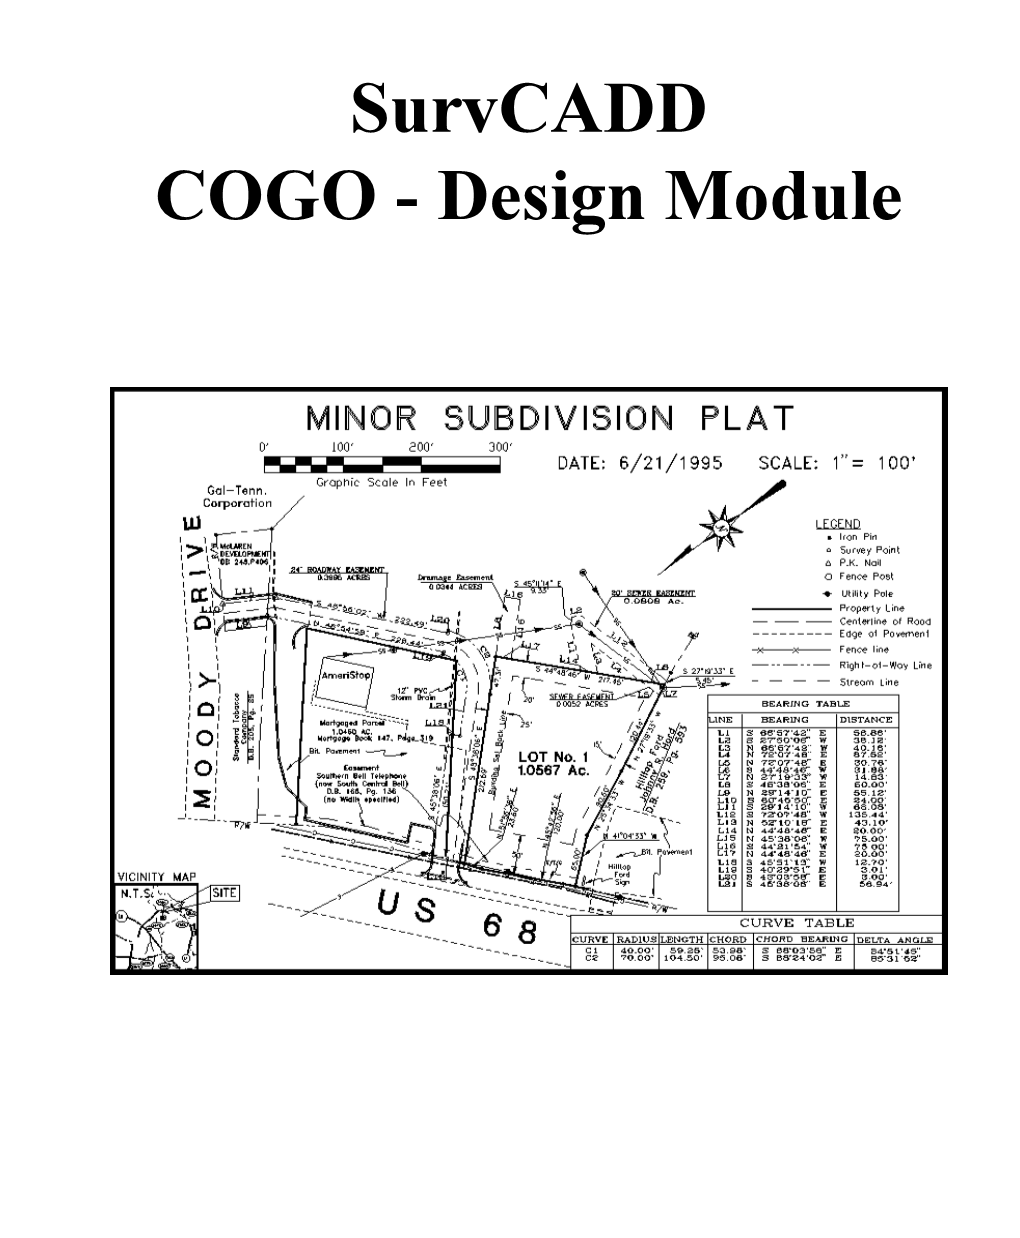 Survcadd COGO - Design Module Tools Commands